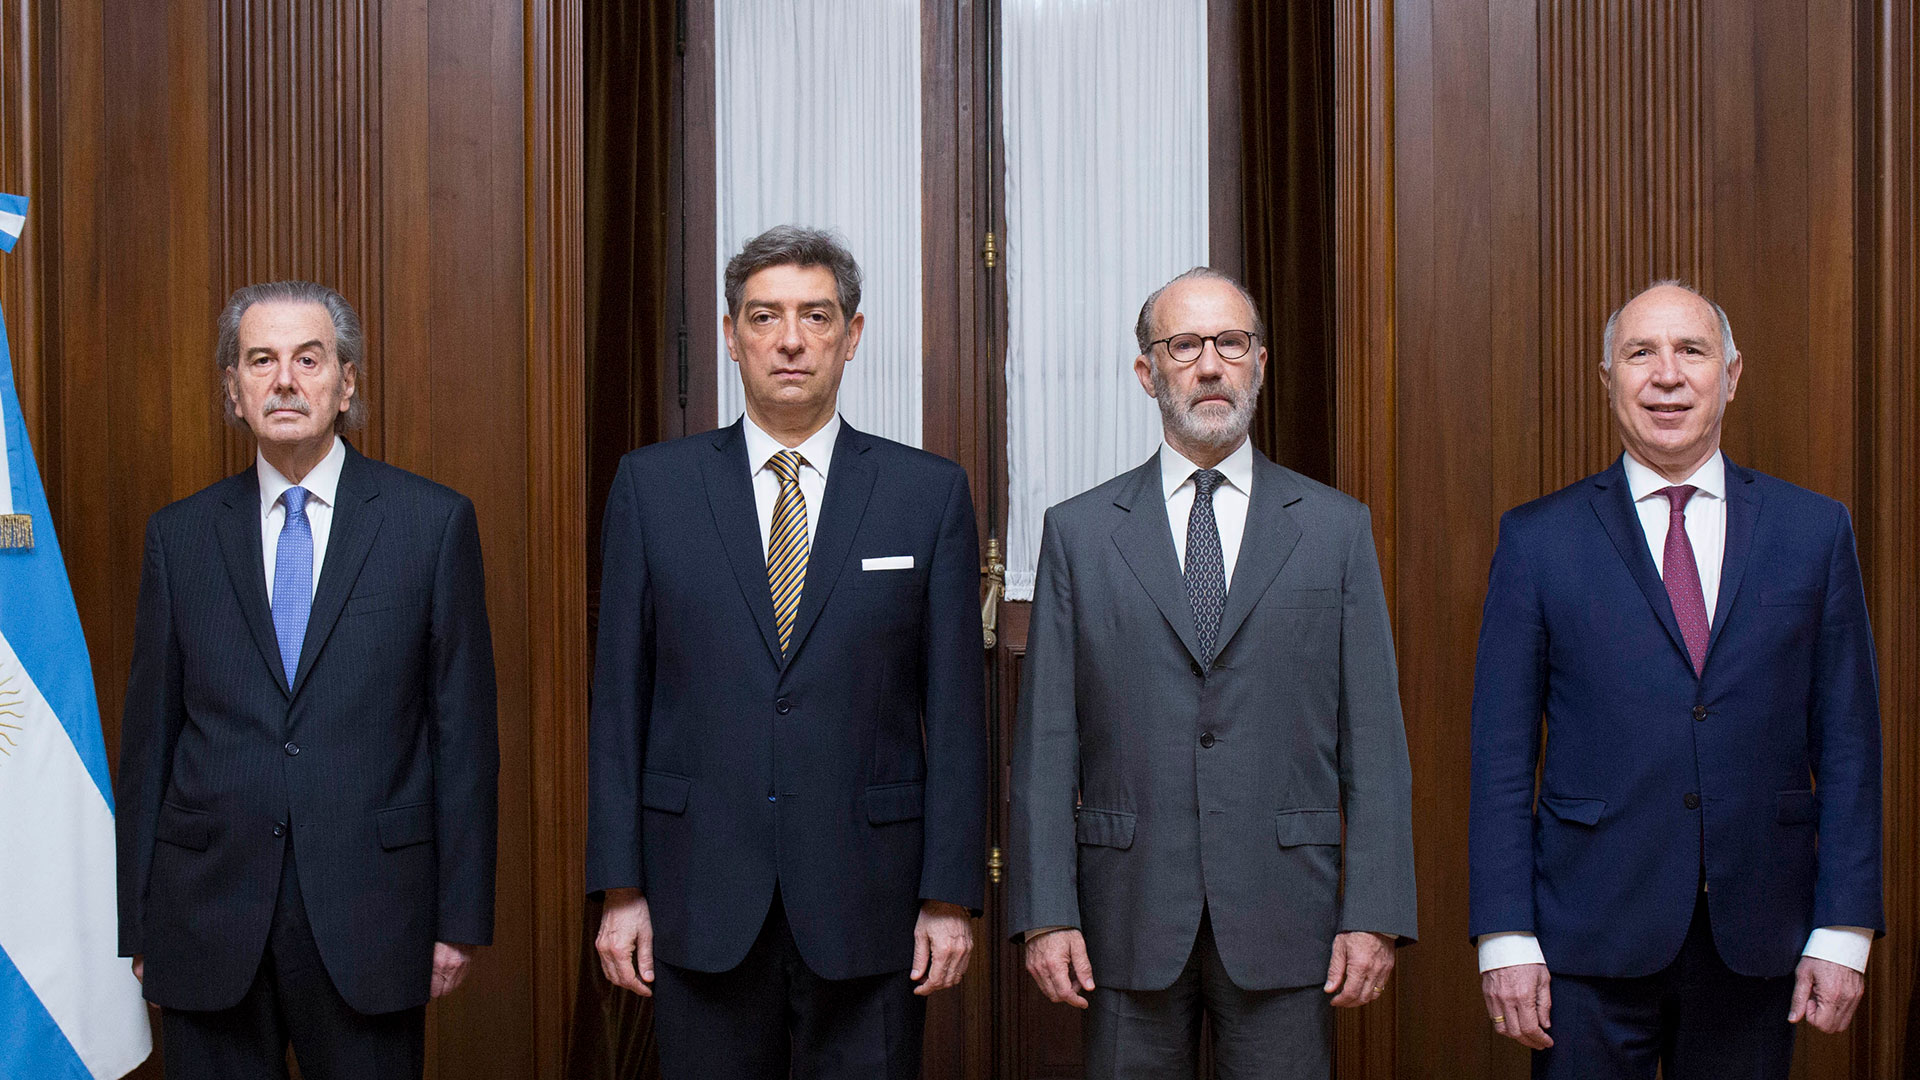 La Corte Suprema de Justicia (de izquierda a derecha): Juan Carlos Maqueda, Horacio Rosatti, Carlos Rozenkrantz y Ricardo Lorenzetti